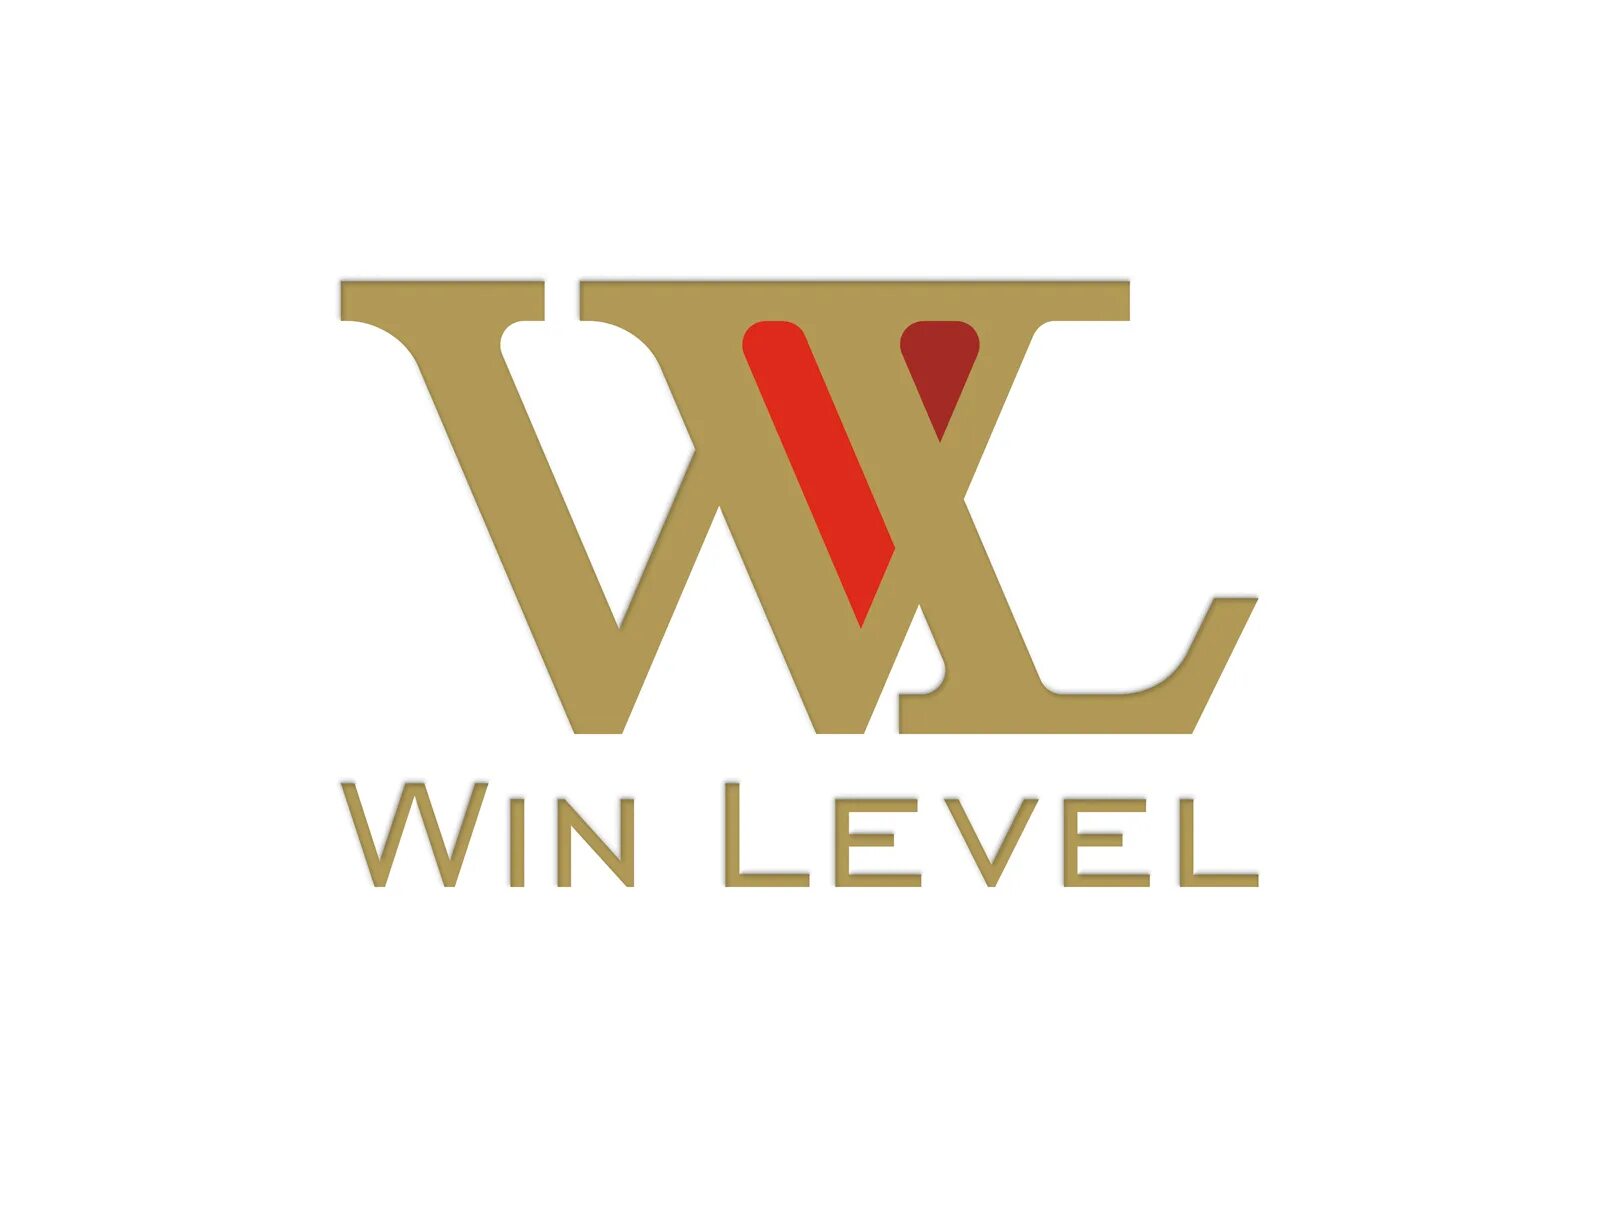 Winlevel логотип. От а до я логотип. Футурамия логотип. Win level